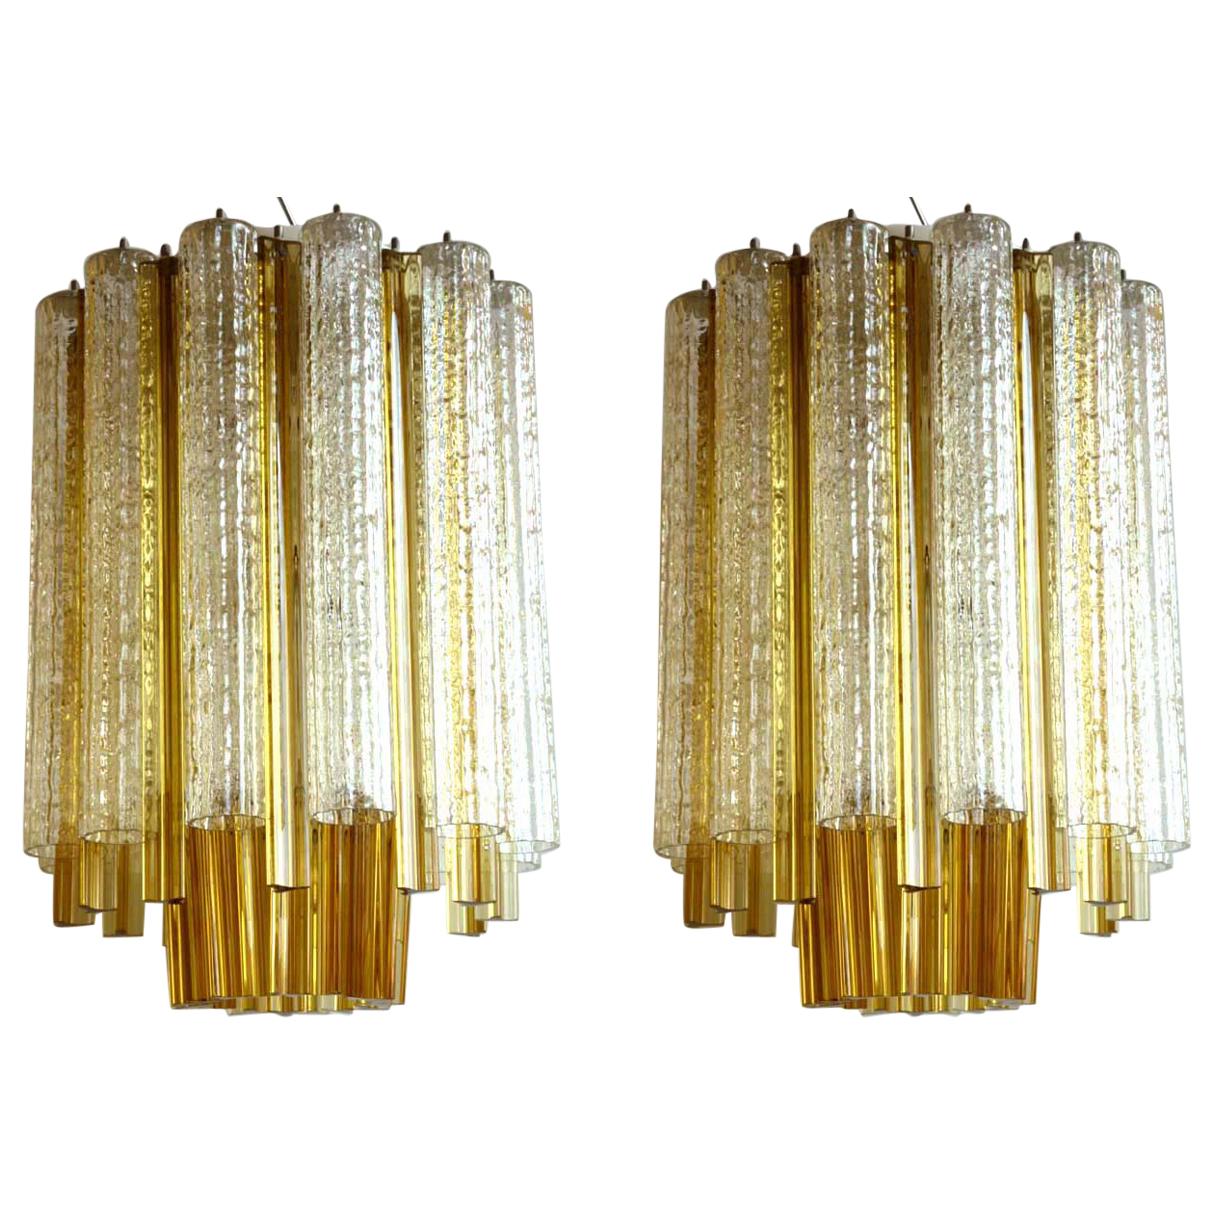 1960s Venini "Trilobi" Murano Glass Italian Design Pair of Ceiling Lamps